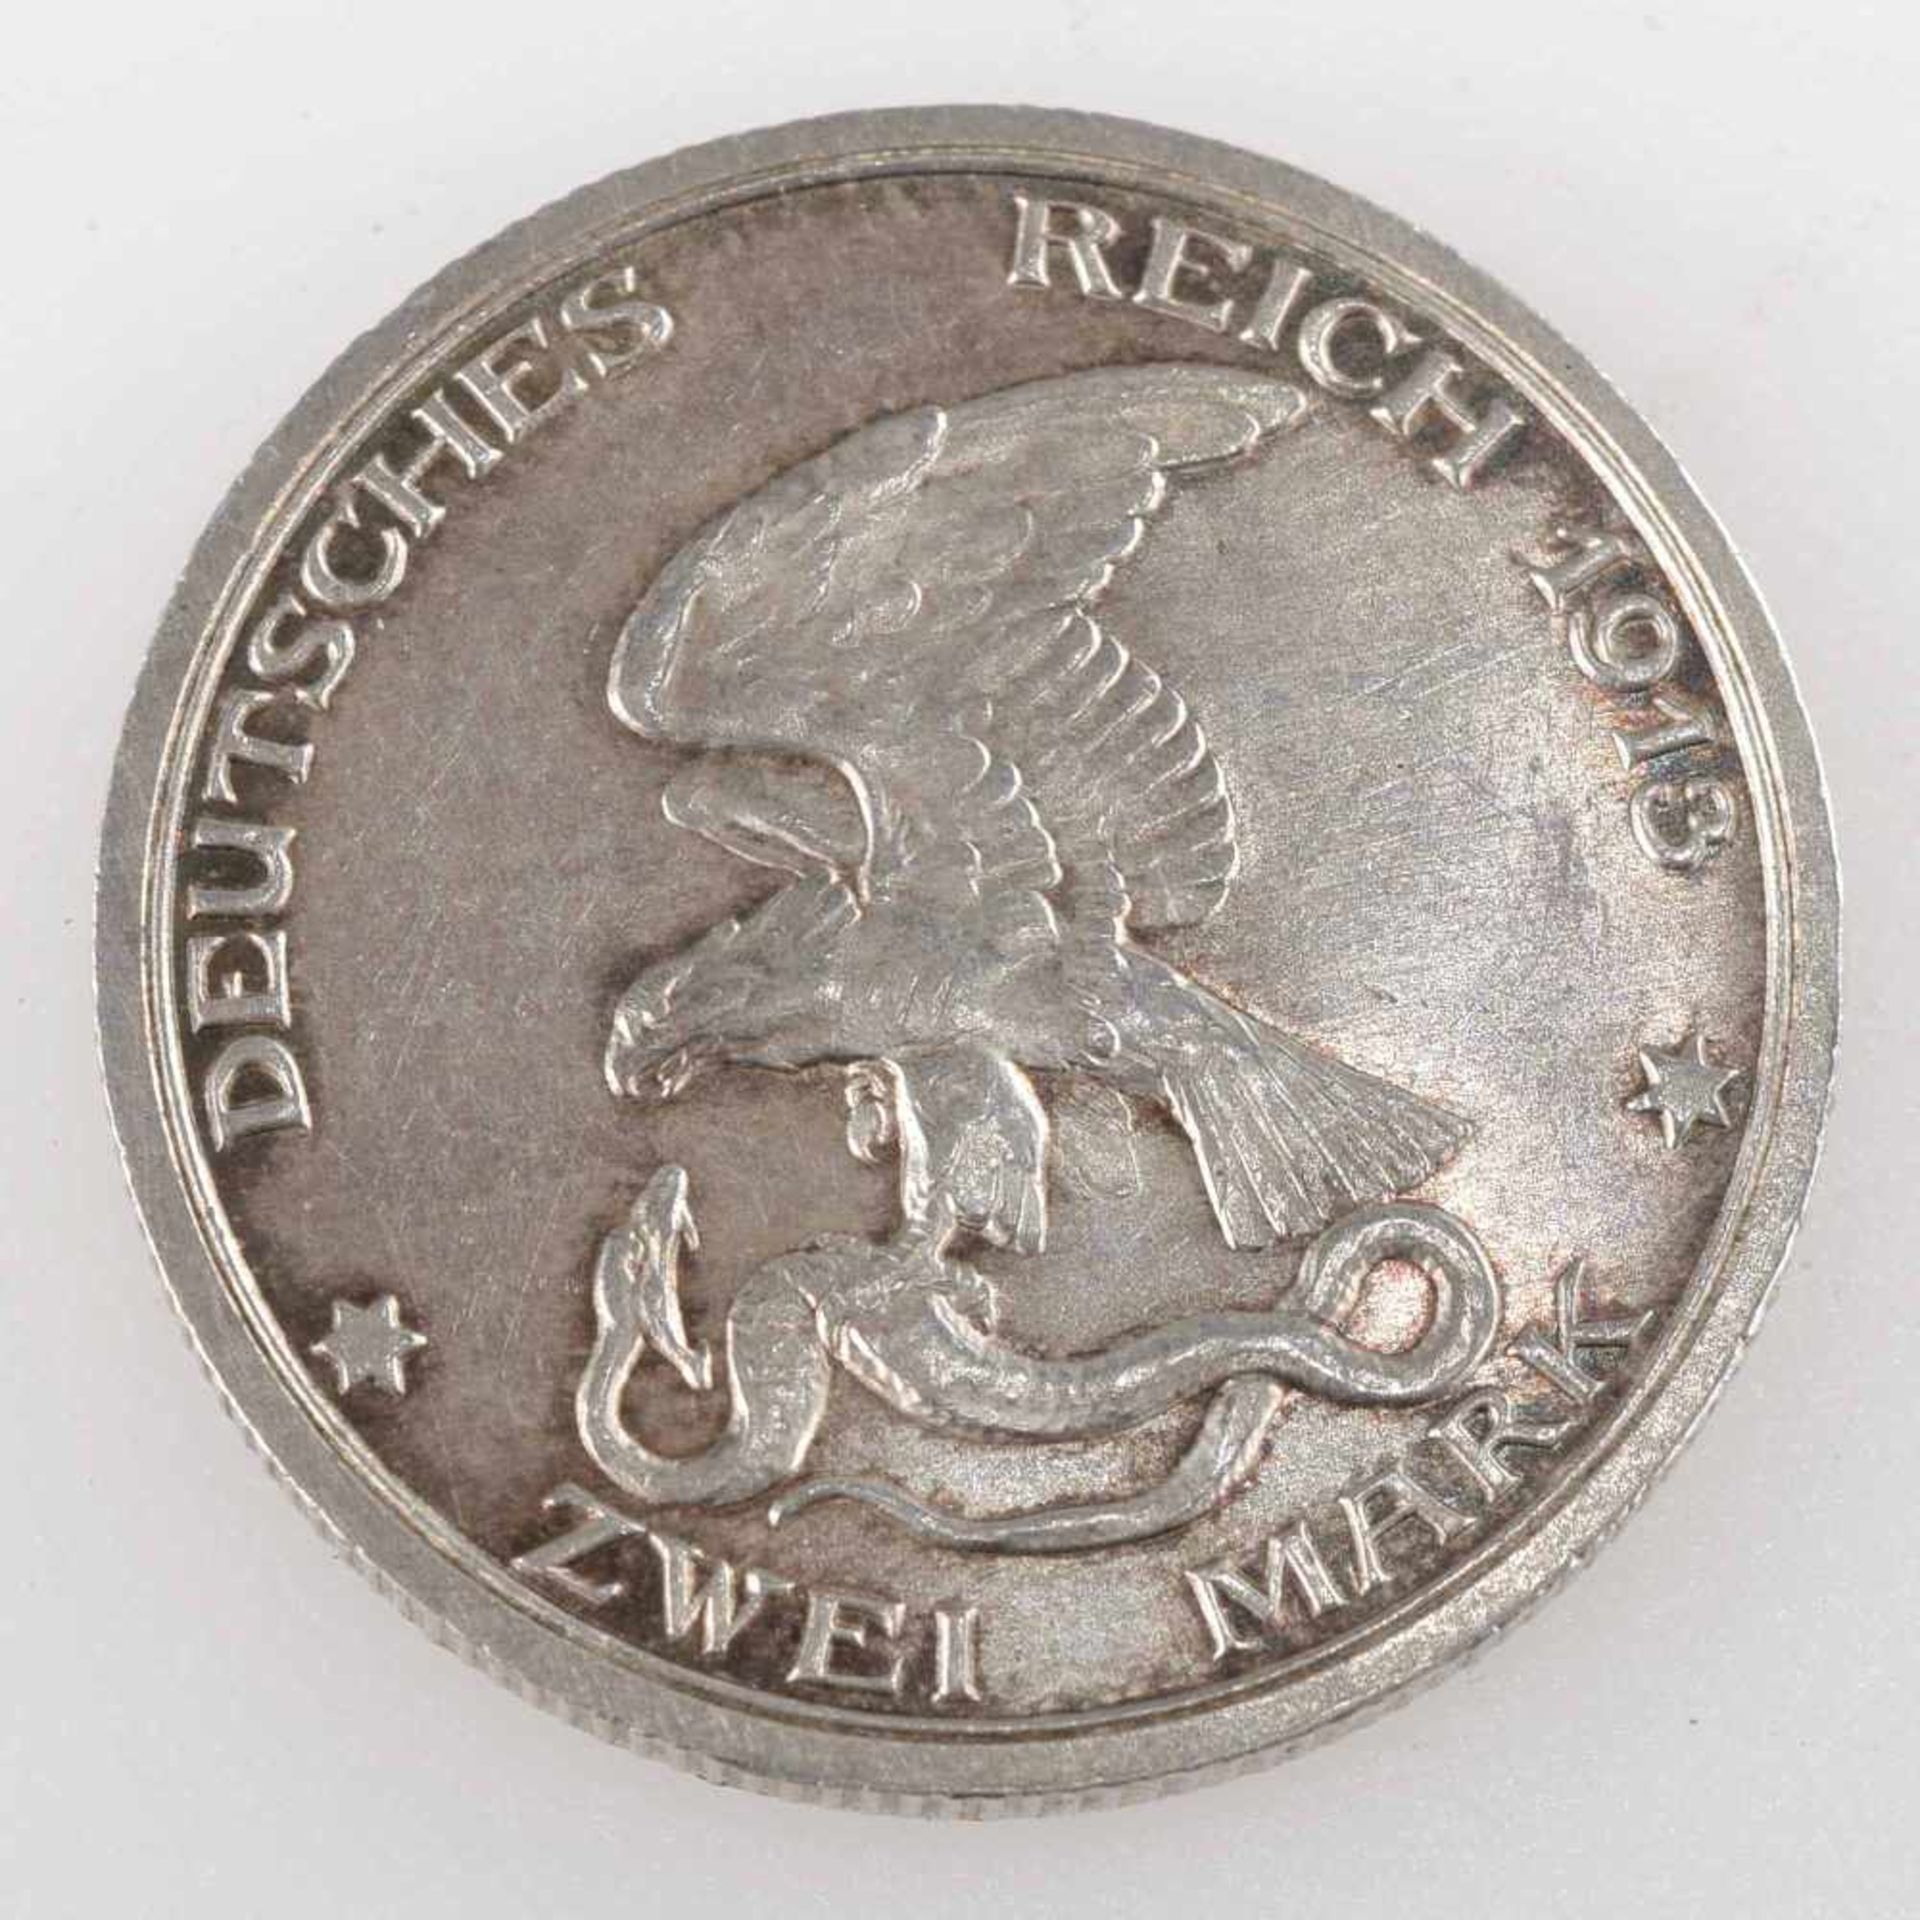 Silbermünze Preußen 1913 2 Mark, Befreiungskriege, av. Adler schlägt Schlange, rv. "Der König rief - Image 2 of 3